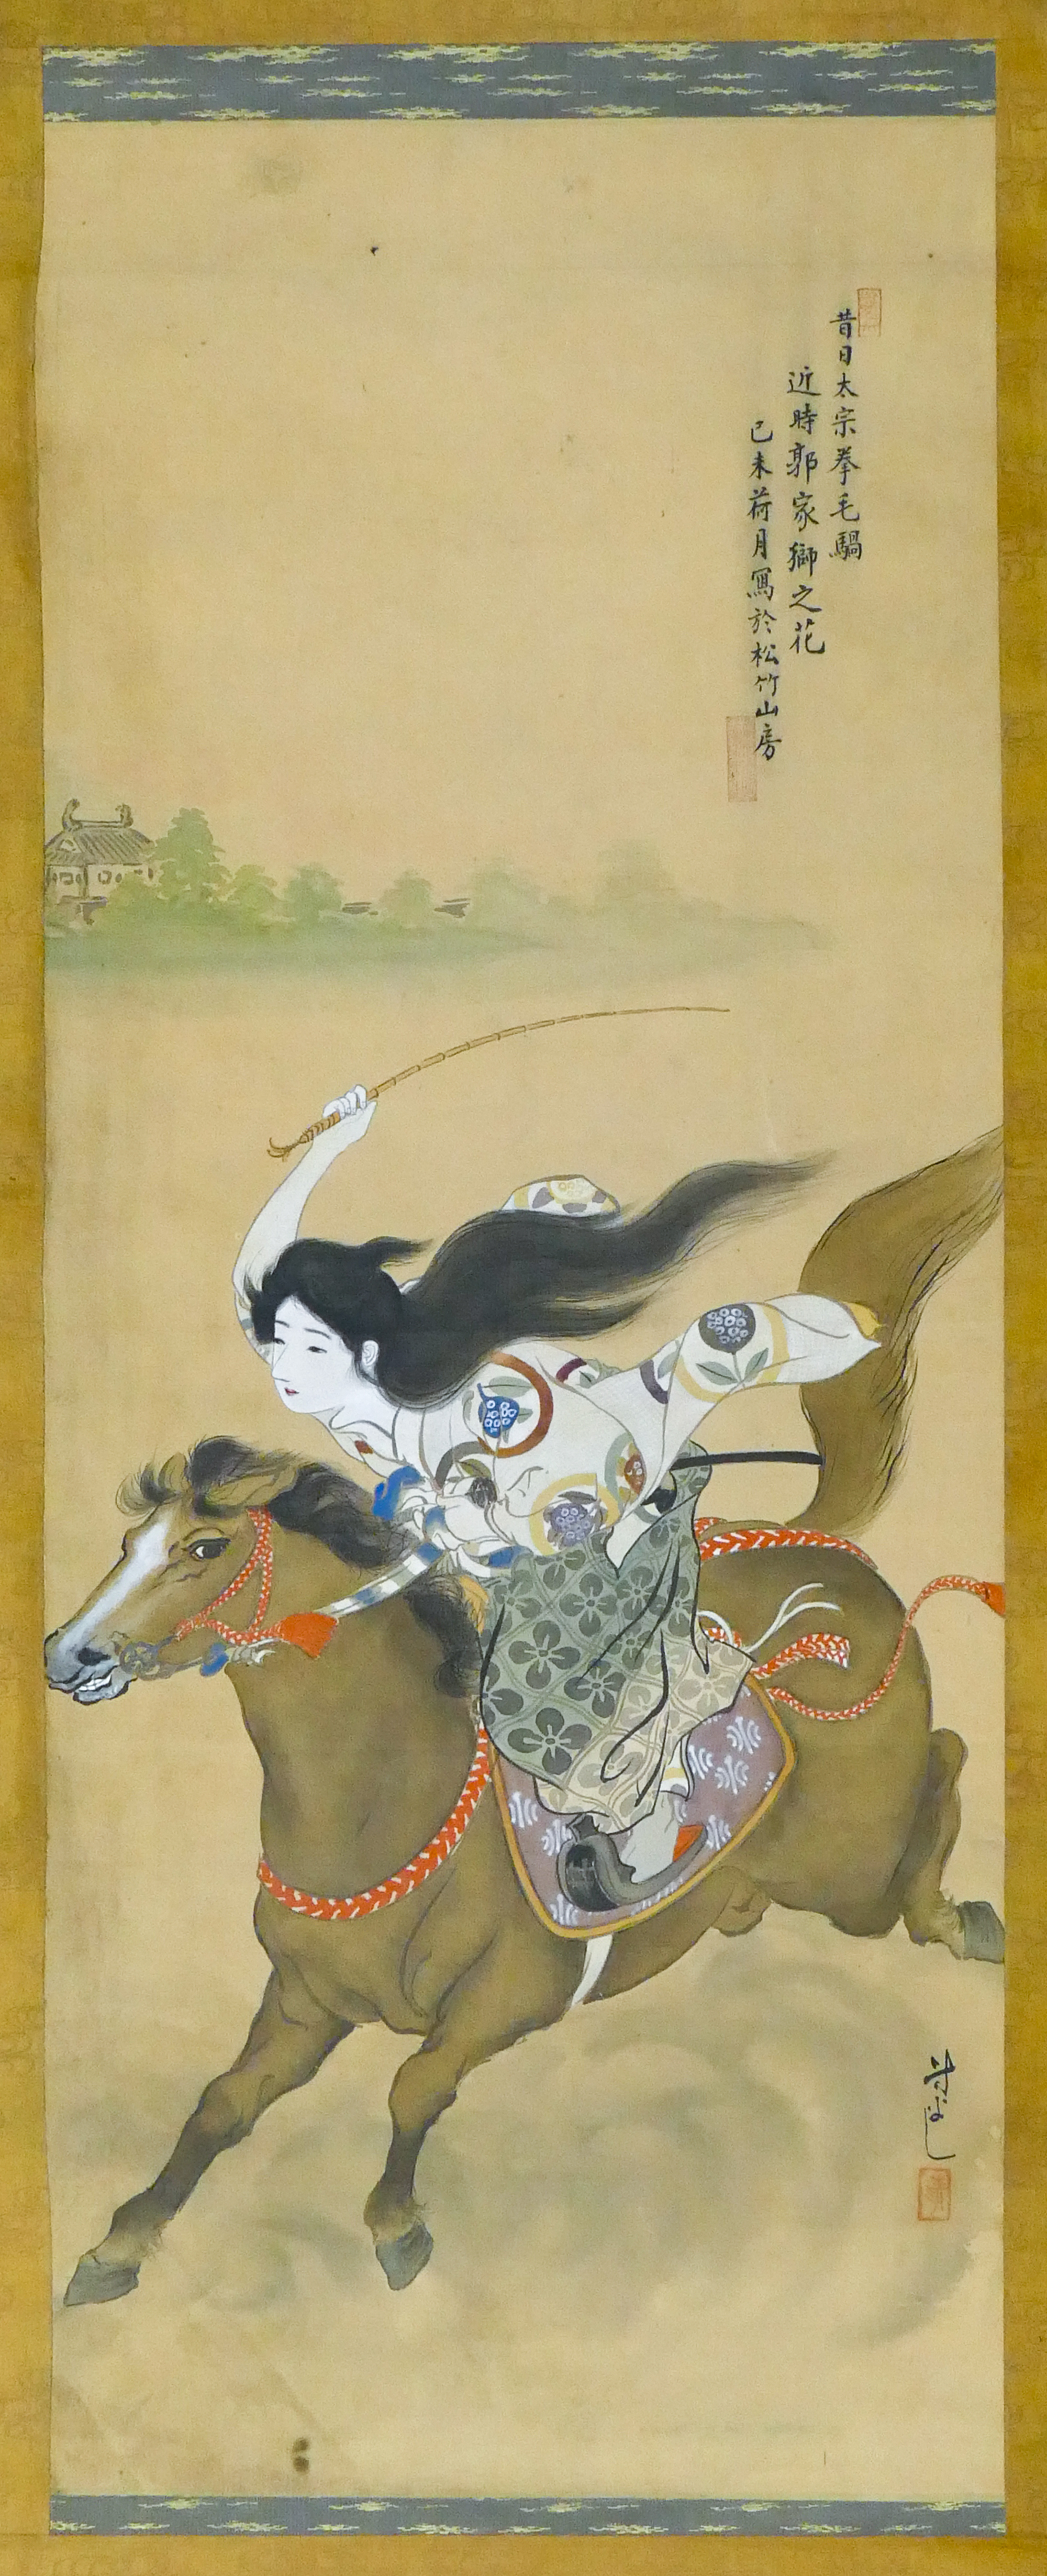 Old Japanese Geisha Riding Horse